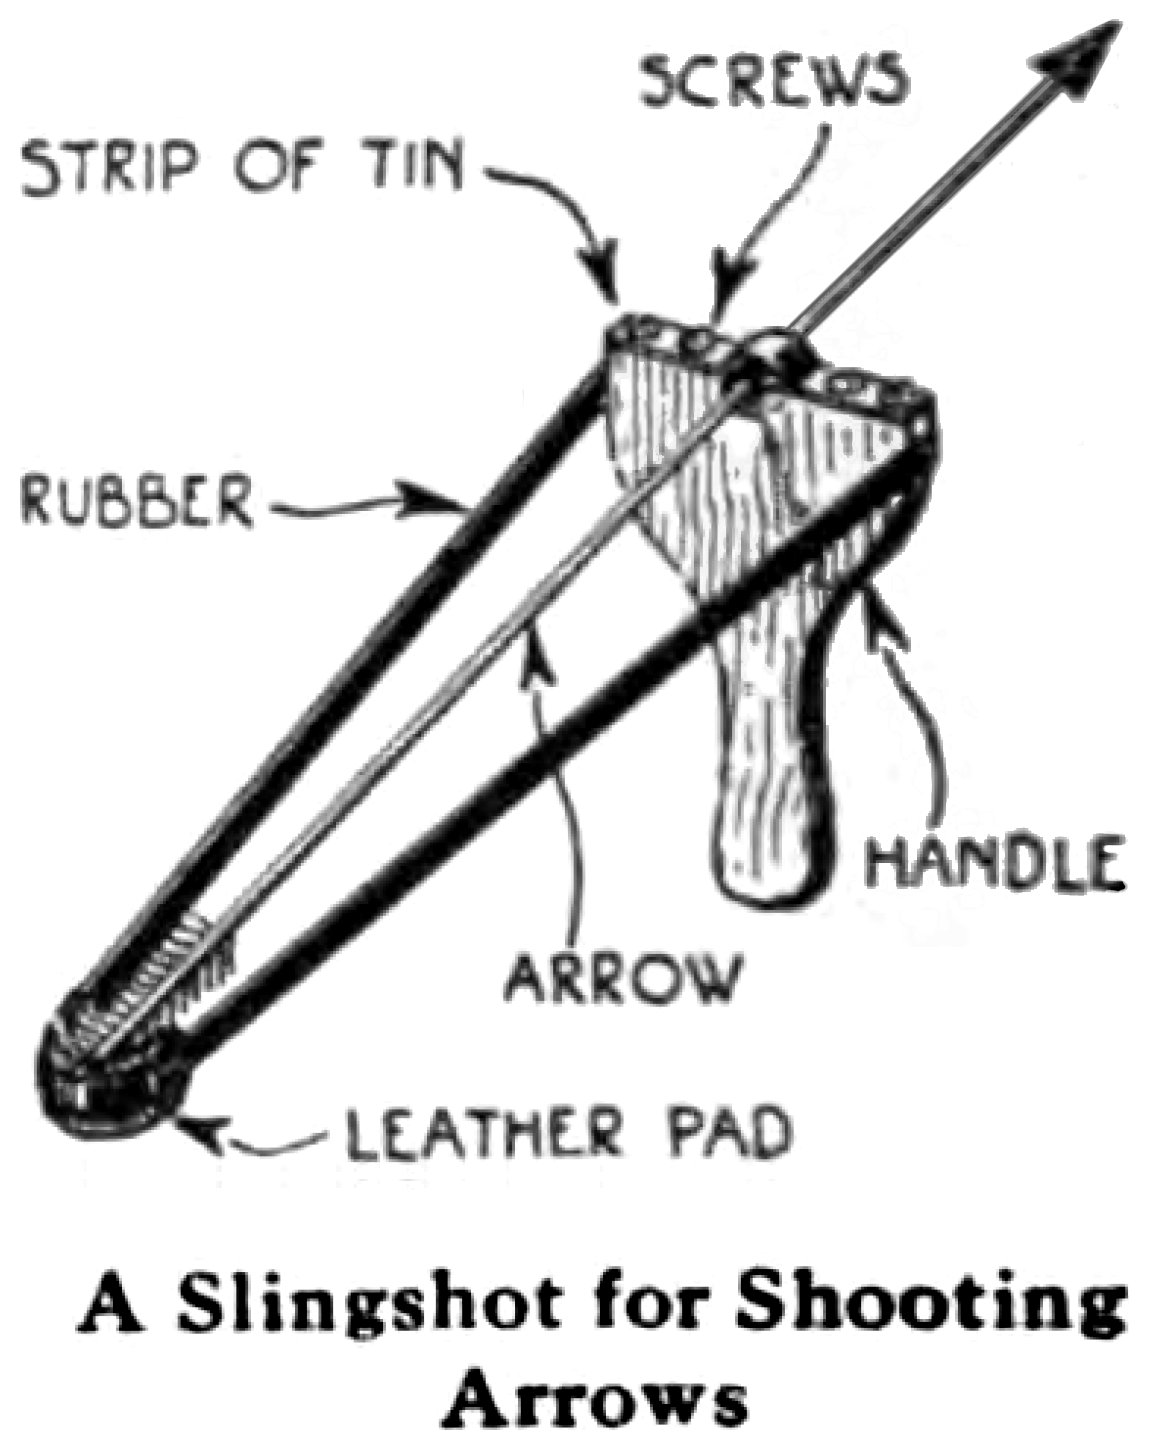 File:Arrow slingshot.jpg - Wikipedia